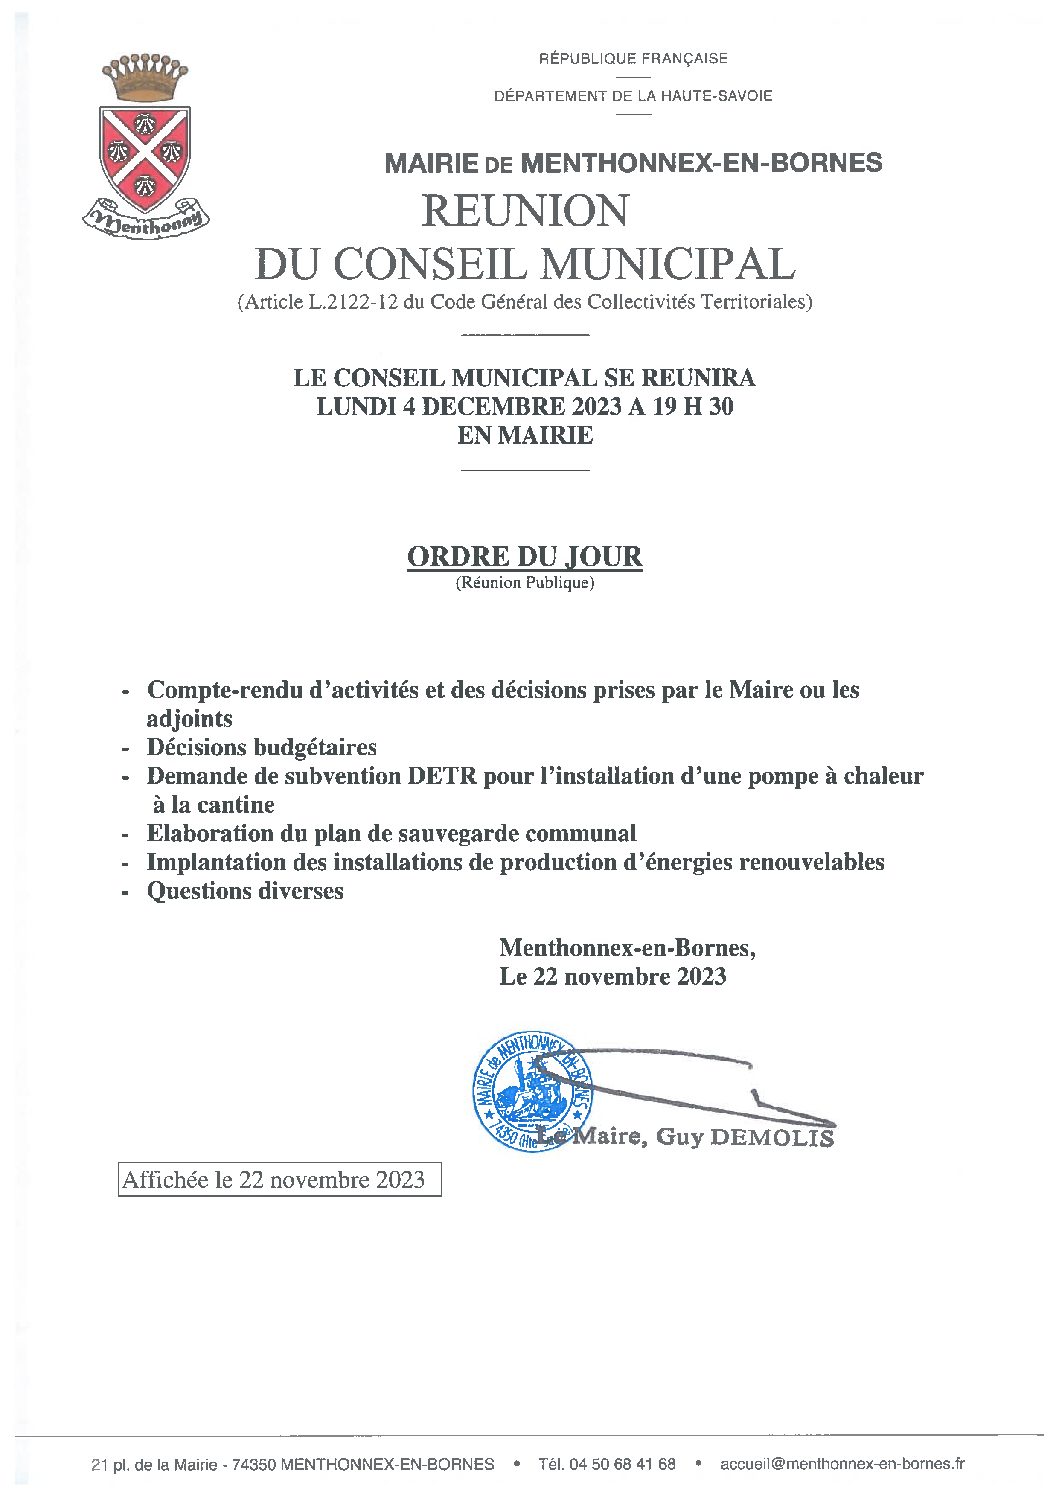 Ordre du jour du conseil municipal du 4 décembre 2023 à télécharger (format PDF, 44 Ko).